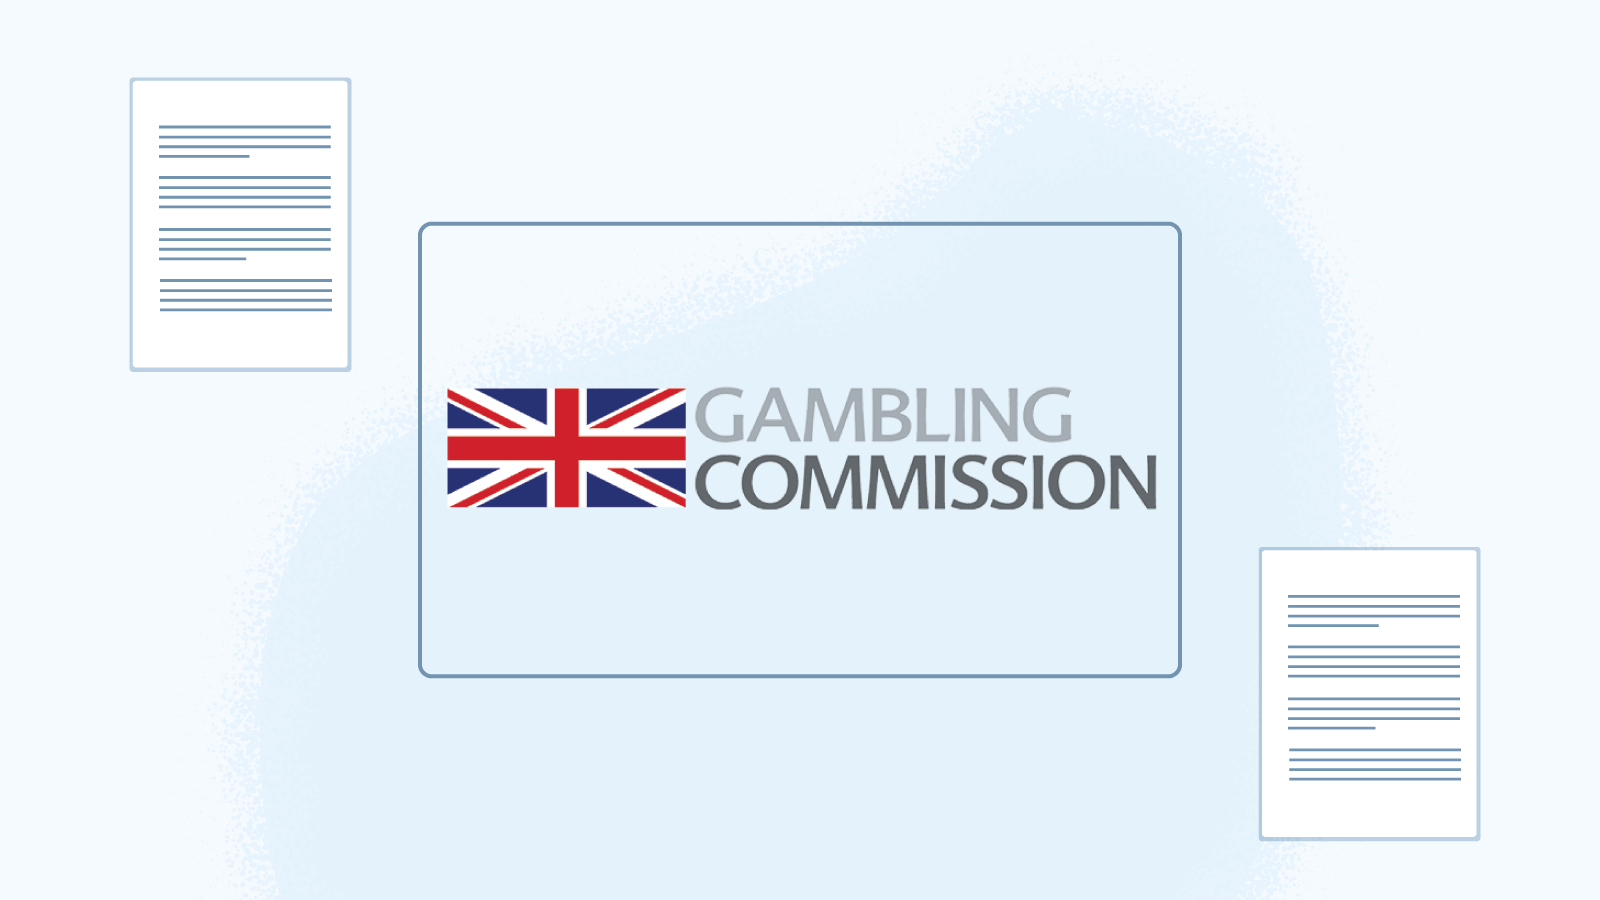 United Kingdom Gambling Commission regulations